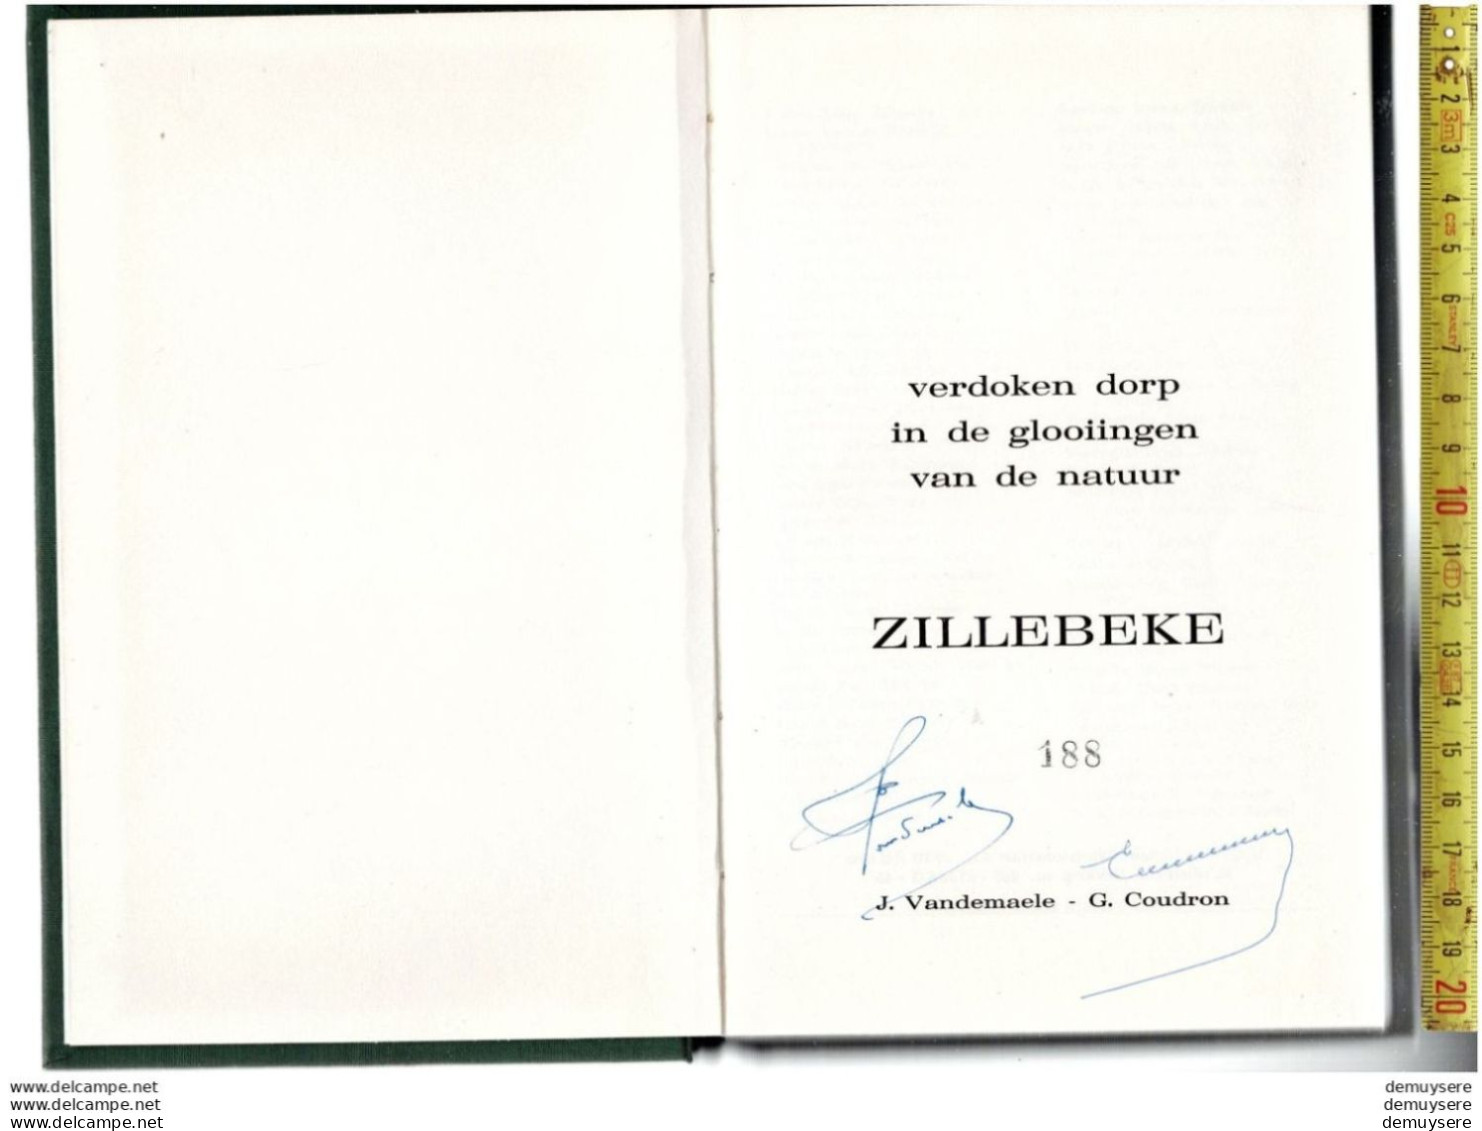 BOEK VERDOKEN DORP IN DE GLOOIINGEN VAN DE NATUUR ZILLEBEKE -  188 - 1974 - 198 BLZ. GETELEND - History